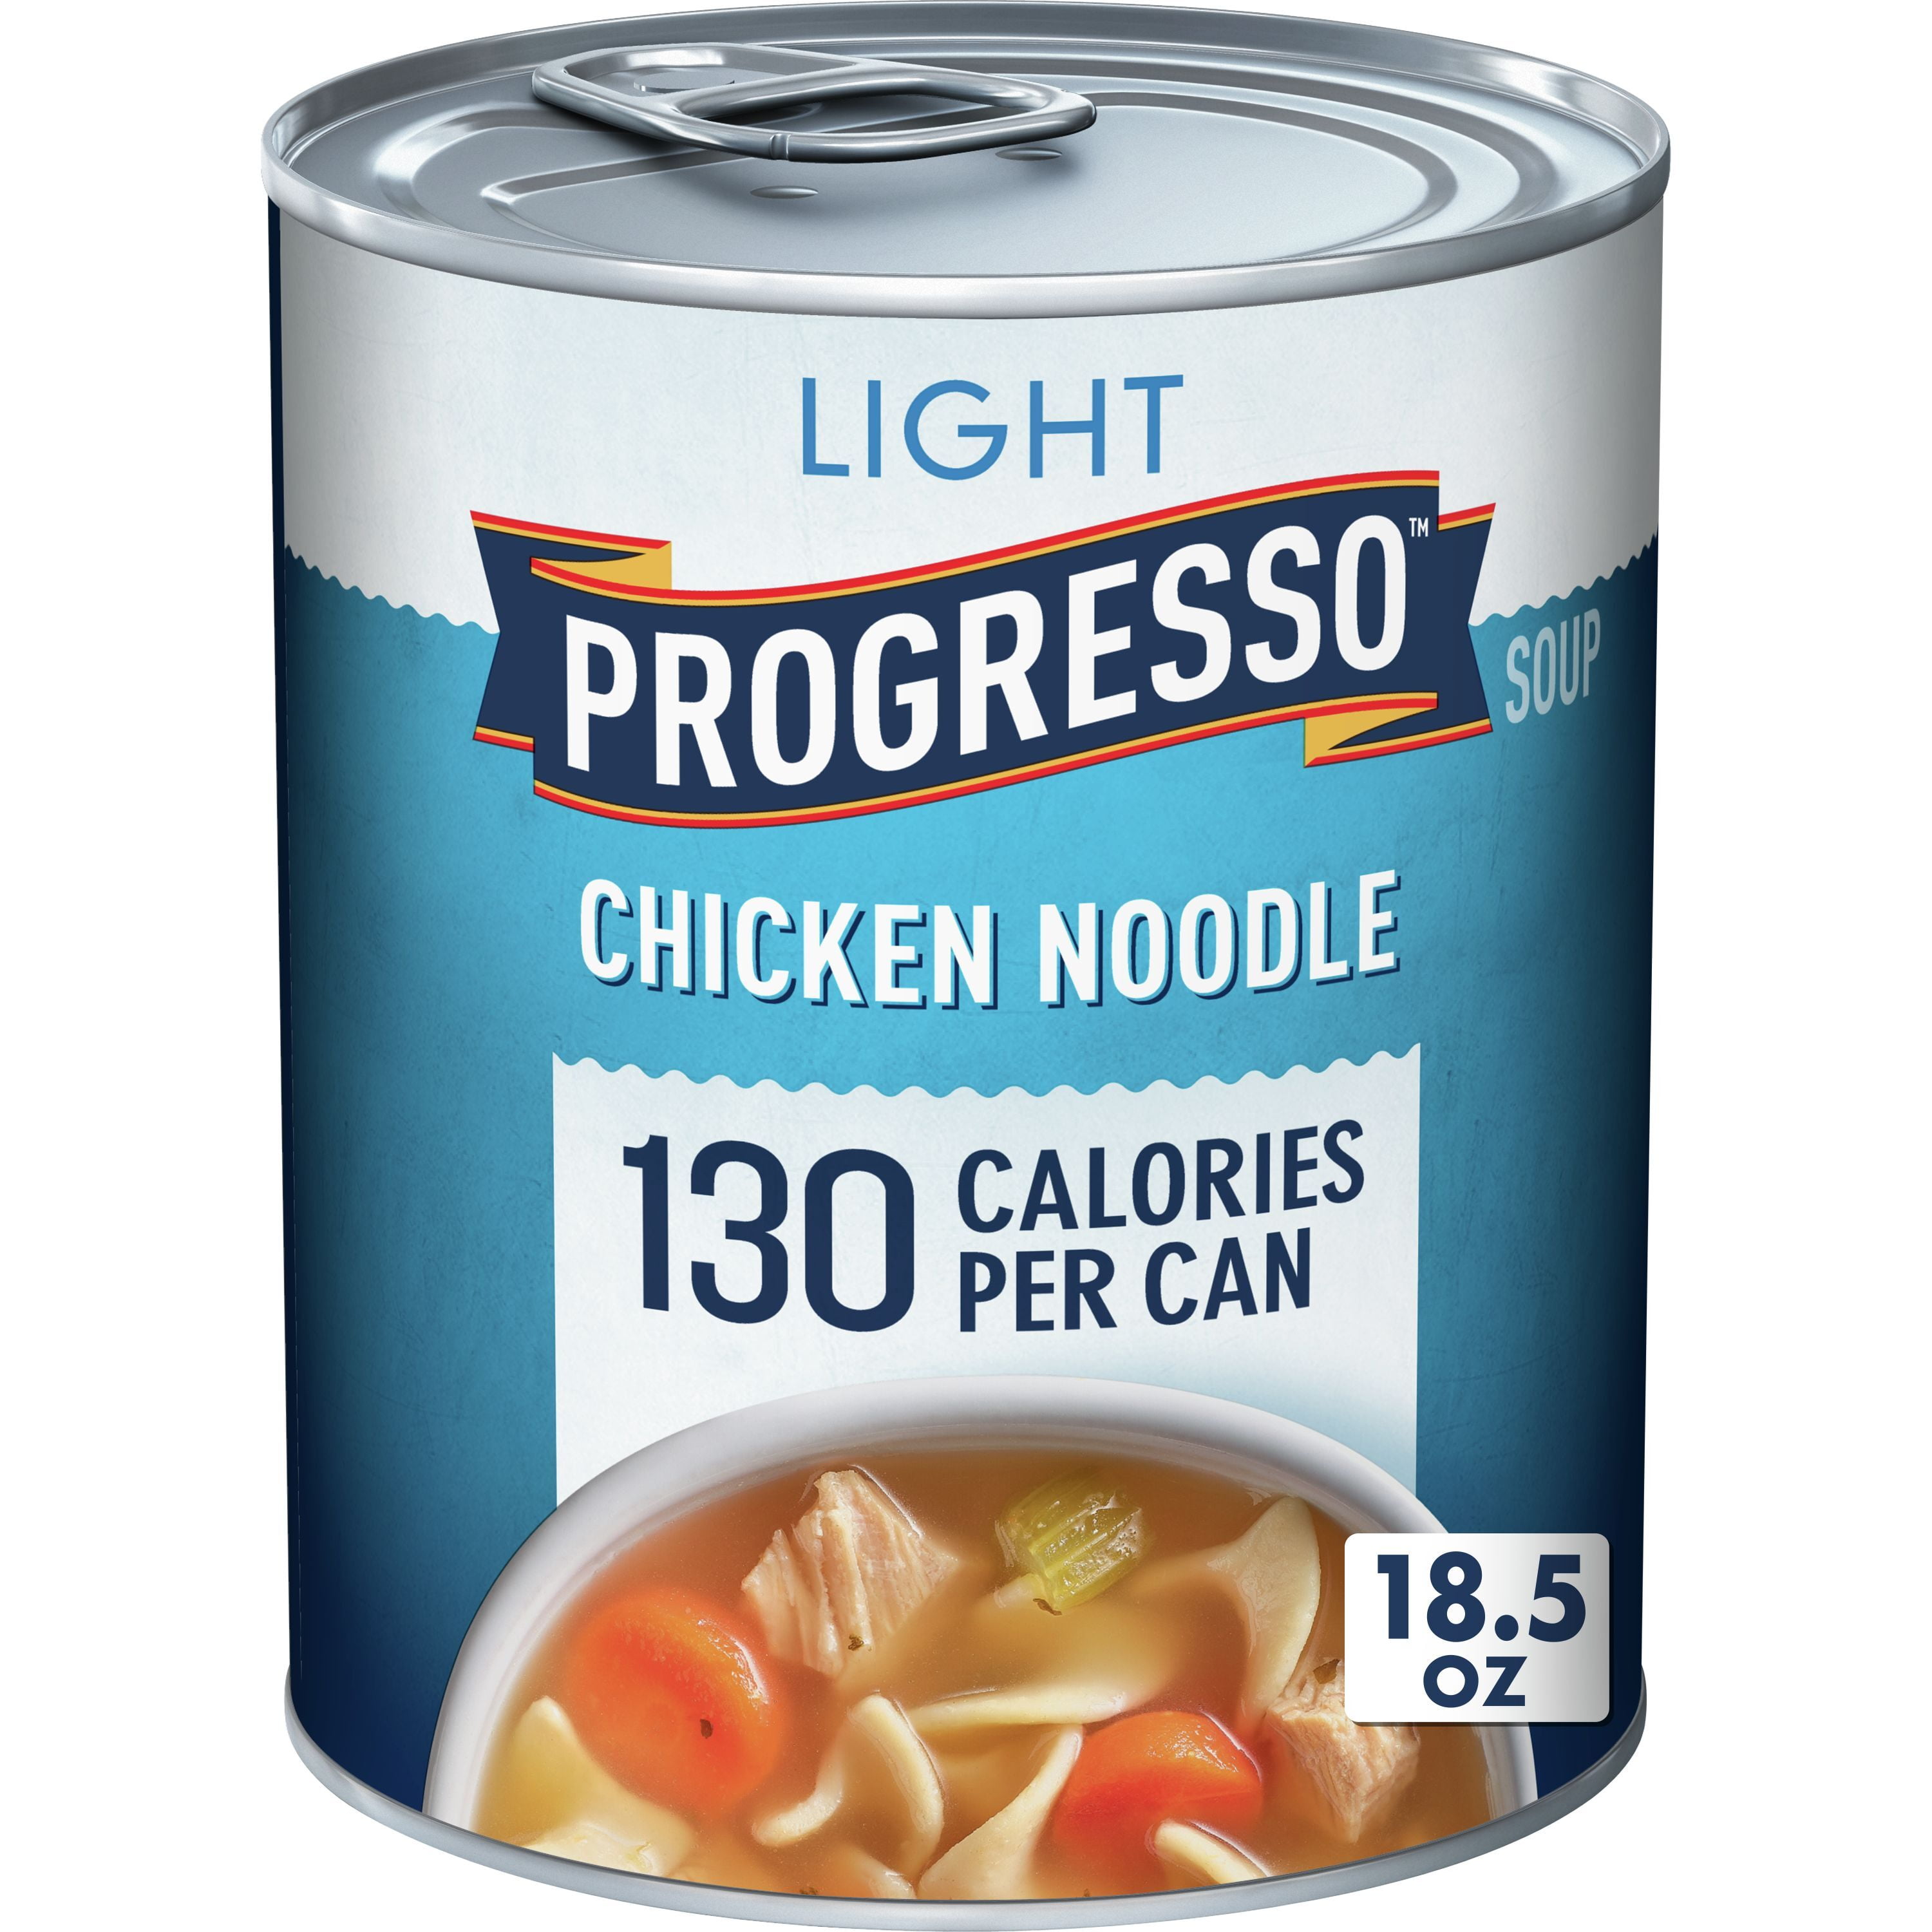 Progresso Light, Chicken Noodle Soup, 18.5 oz.